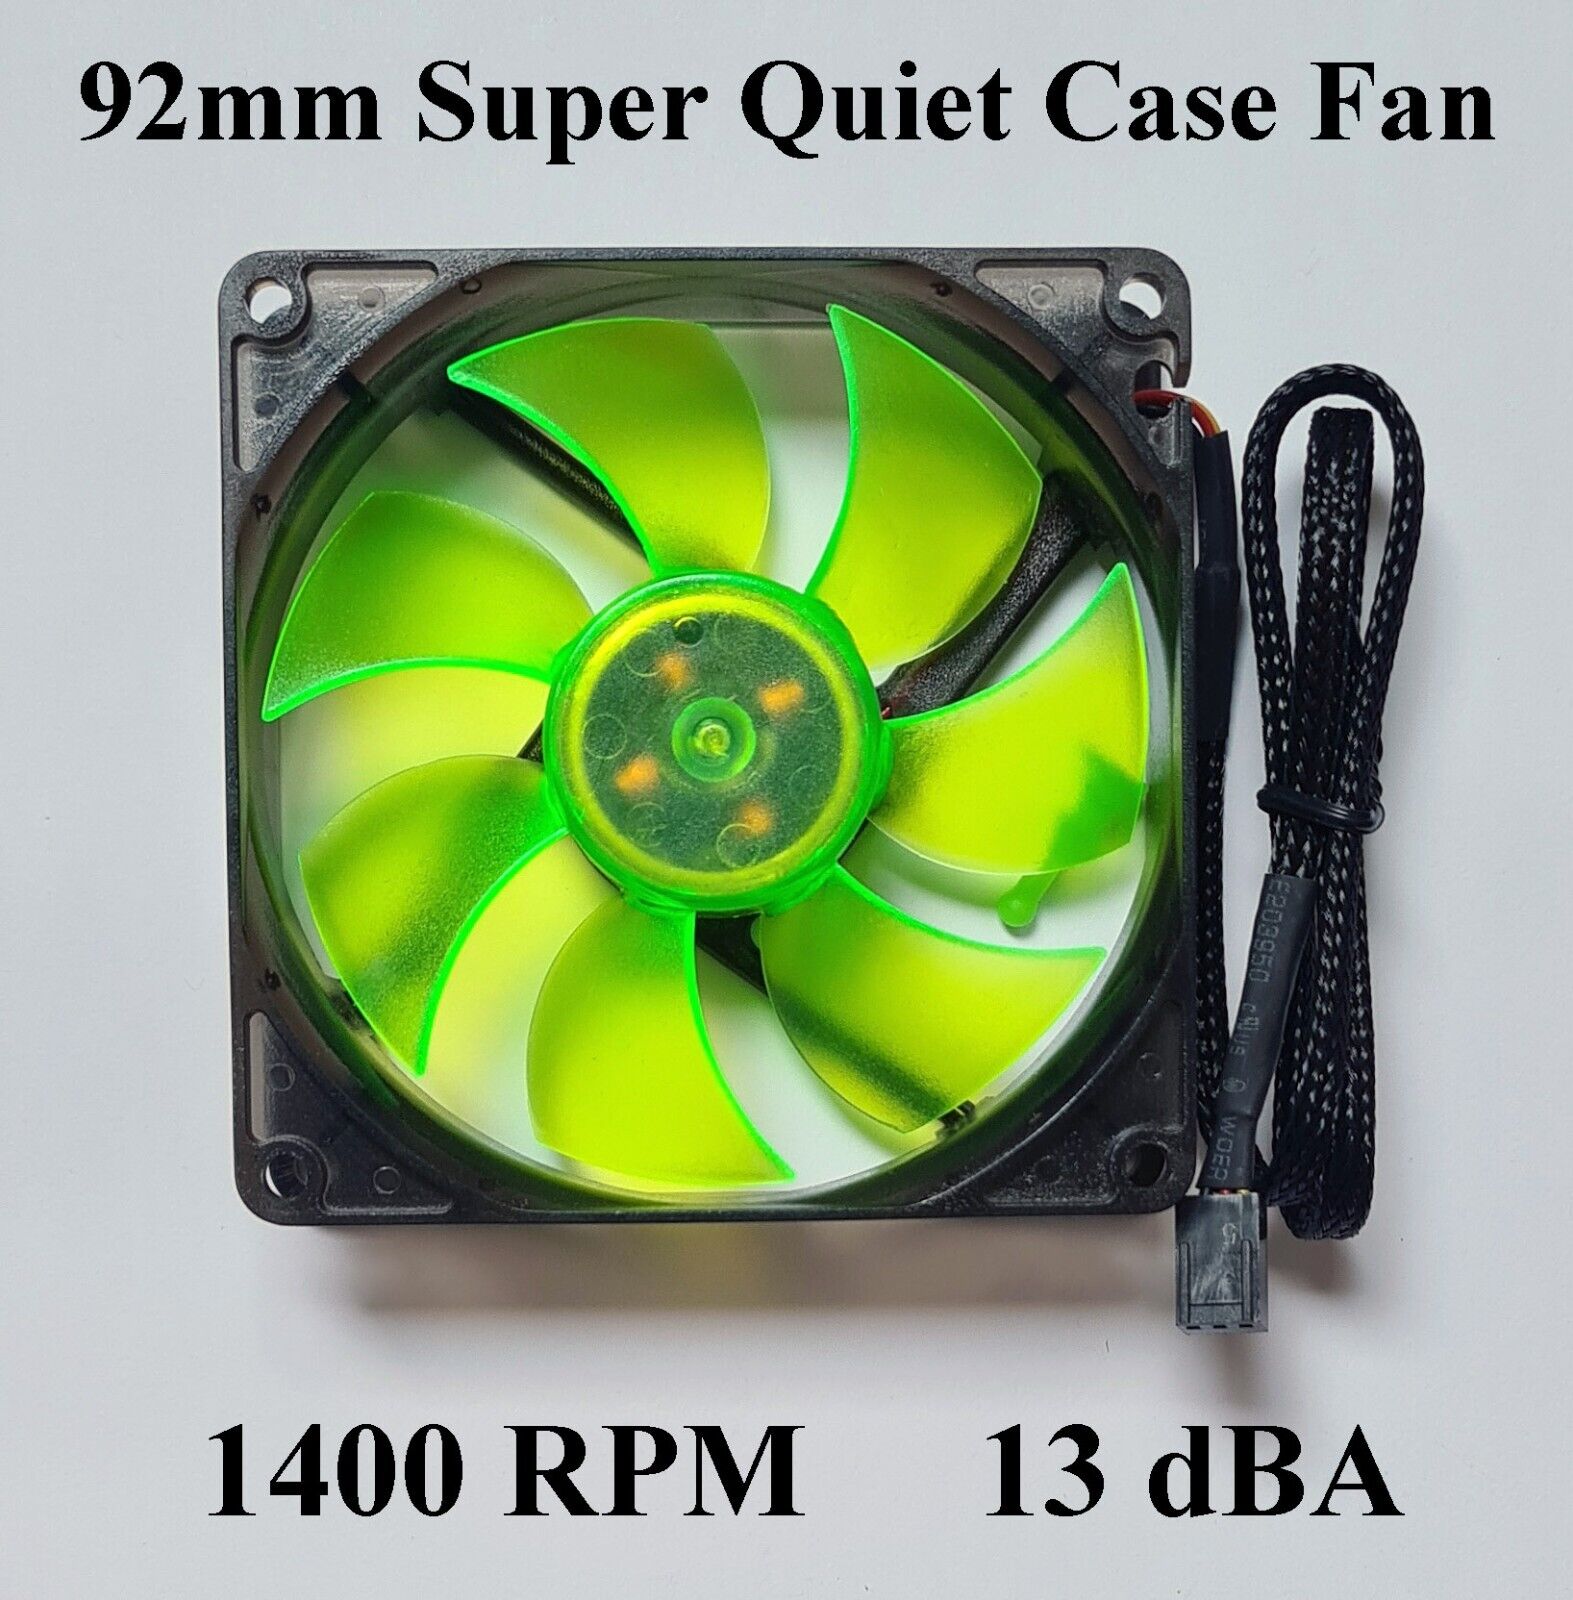 Super Quiet 92mm Case Fan 1400 RPM 13 dBA 3 pin w/ PCI Slot Fan Speed Controller